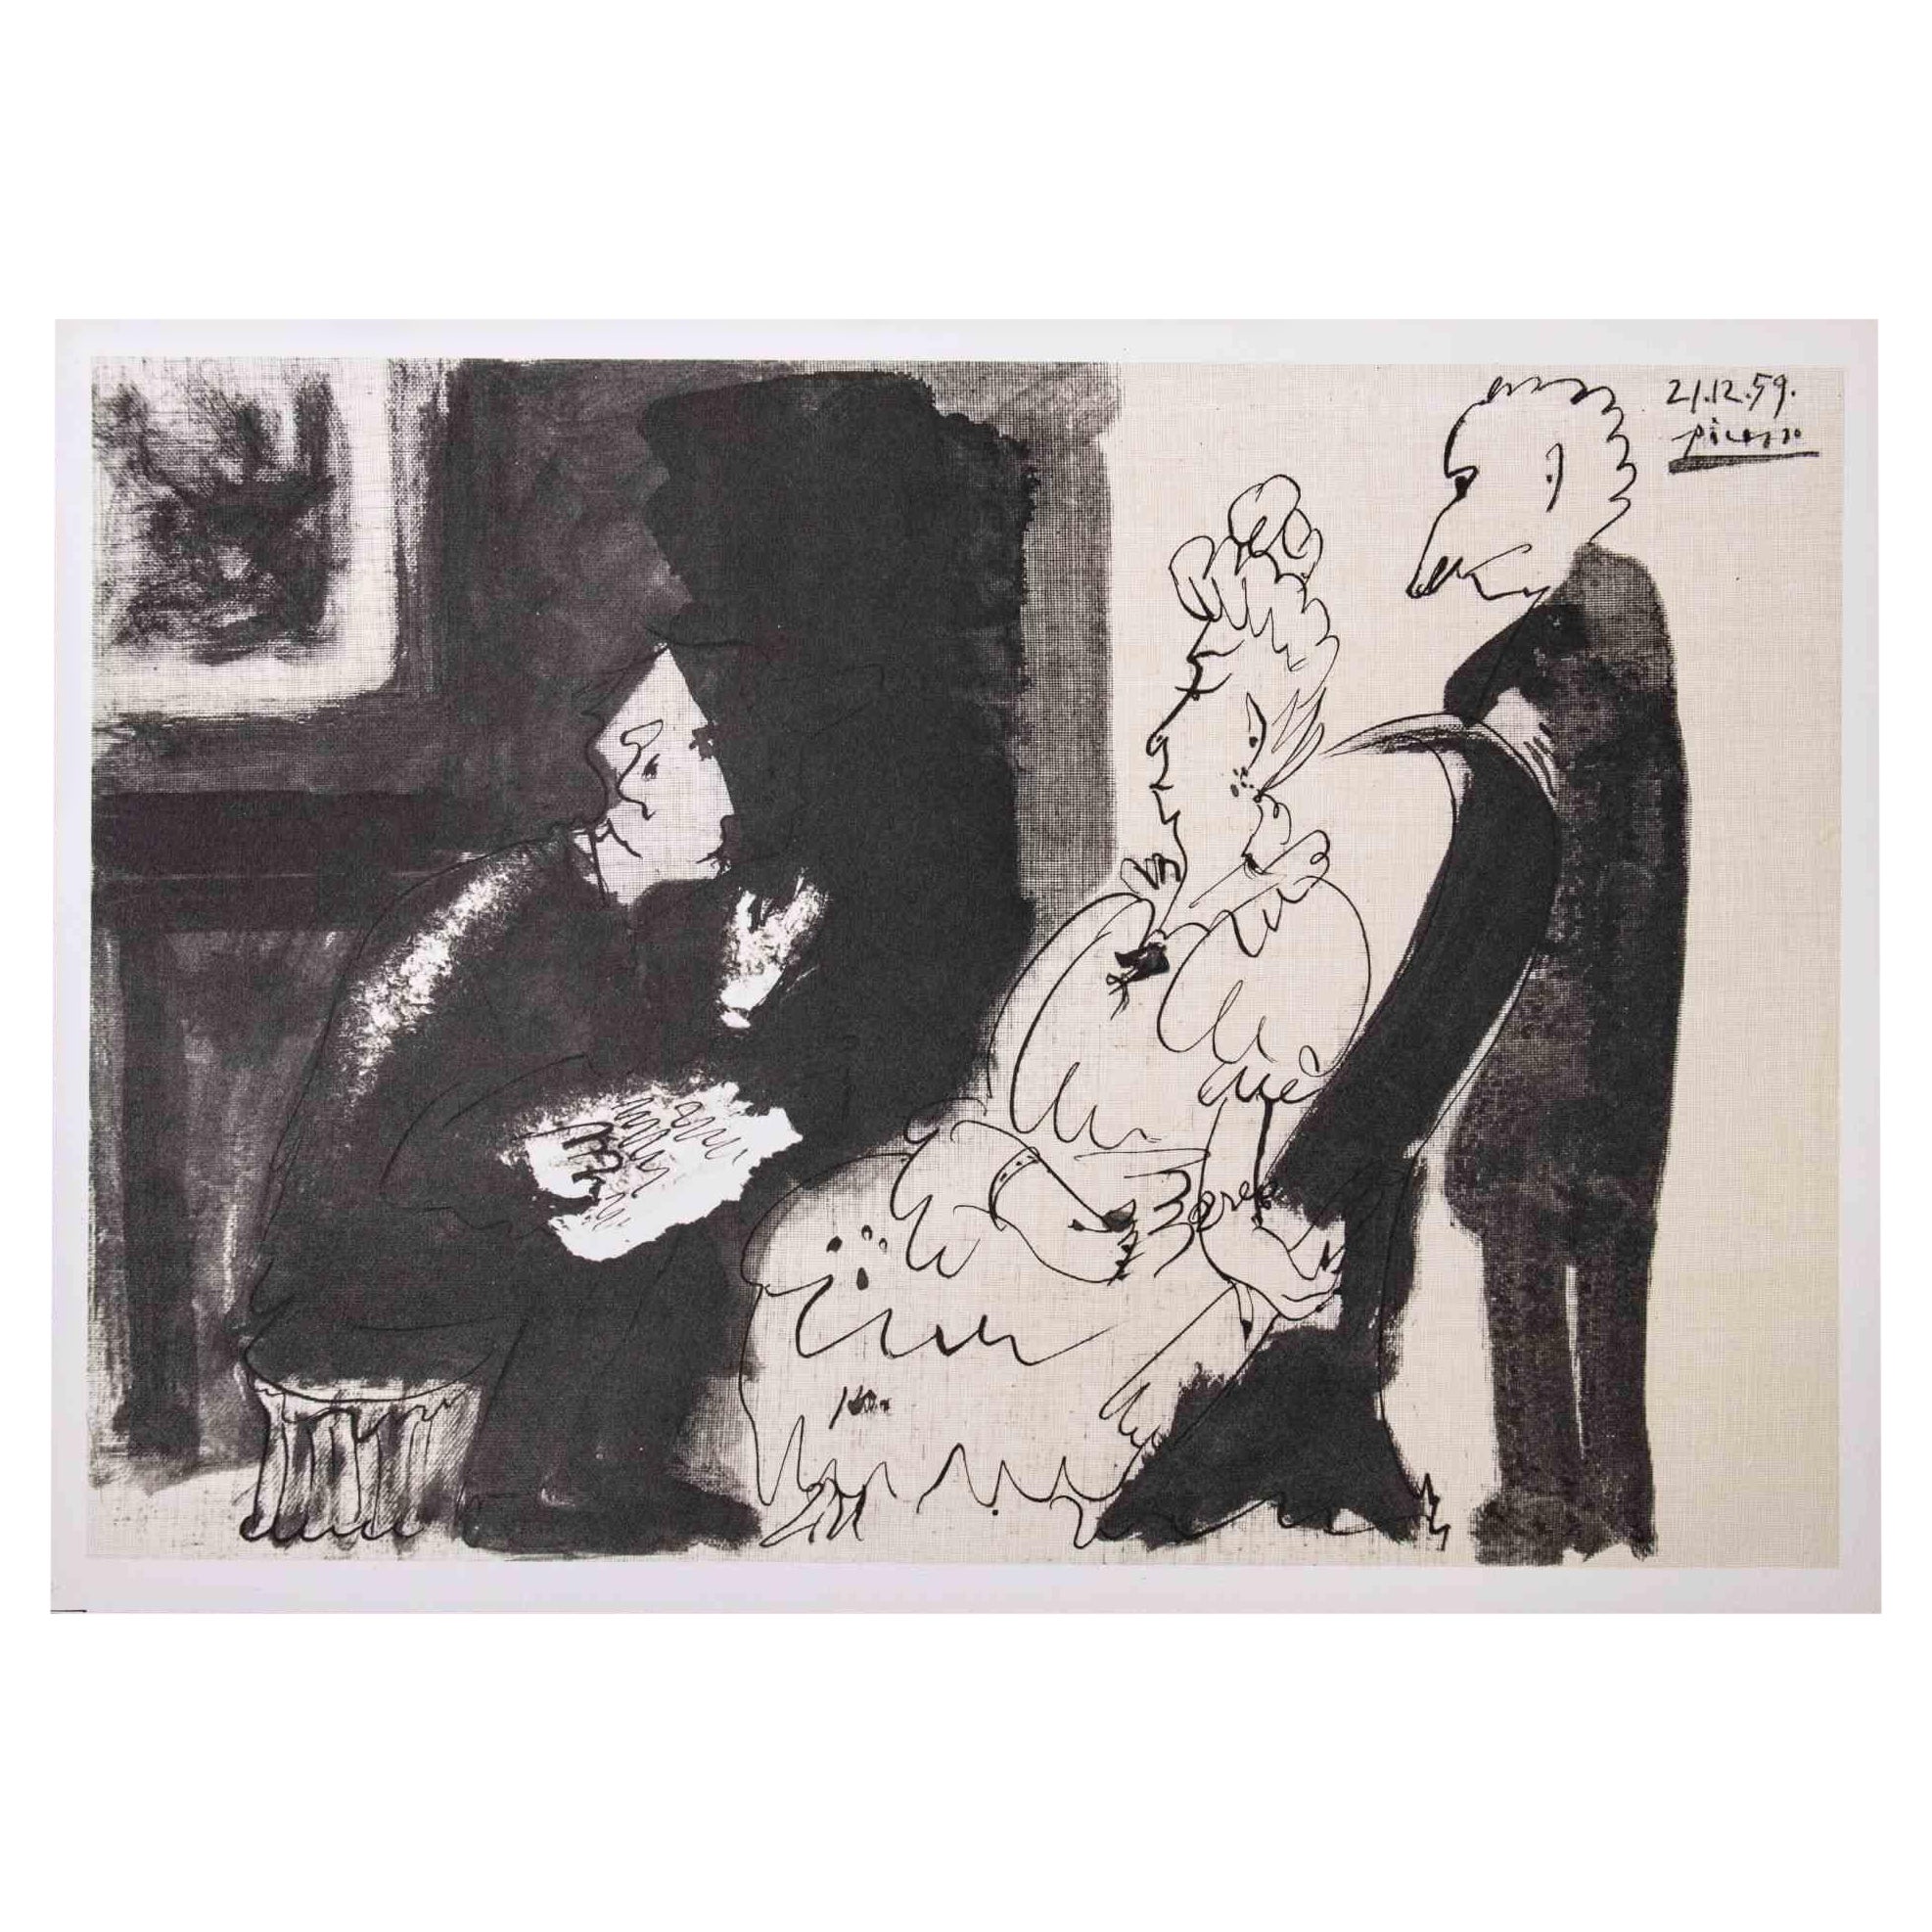 La Lecture - Photolithograph after Pablo Picasso - 1959